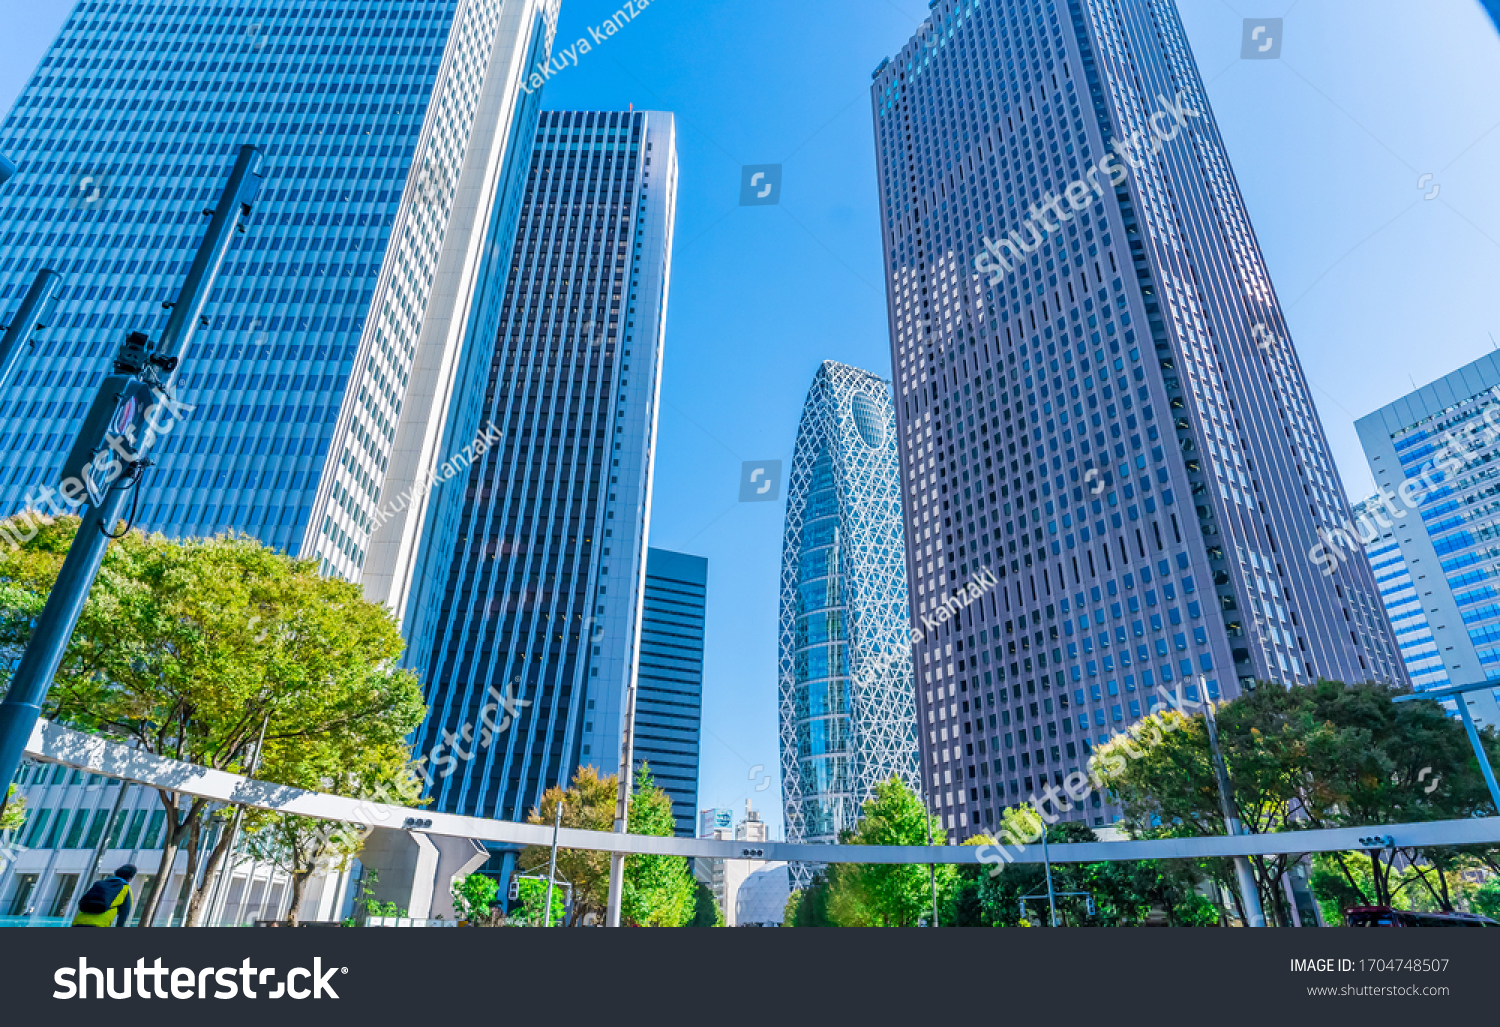 「日本 ビジネス街」の写真素材、画像、写真 | Shutterstock